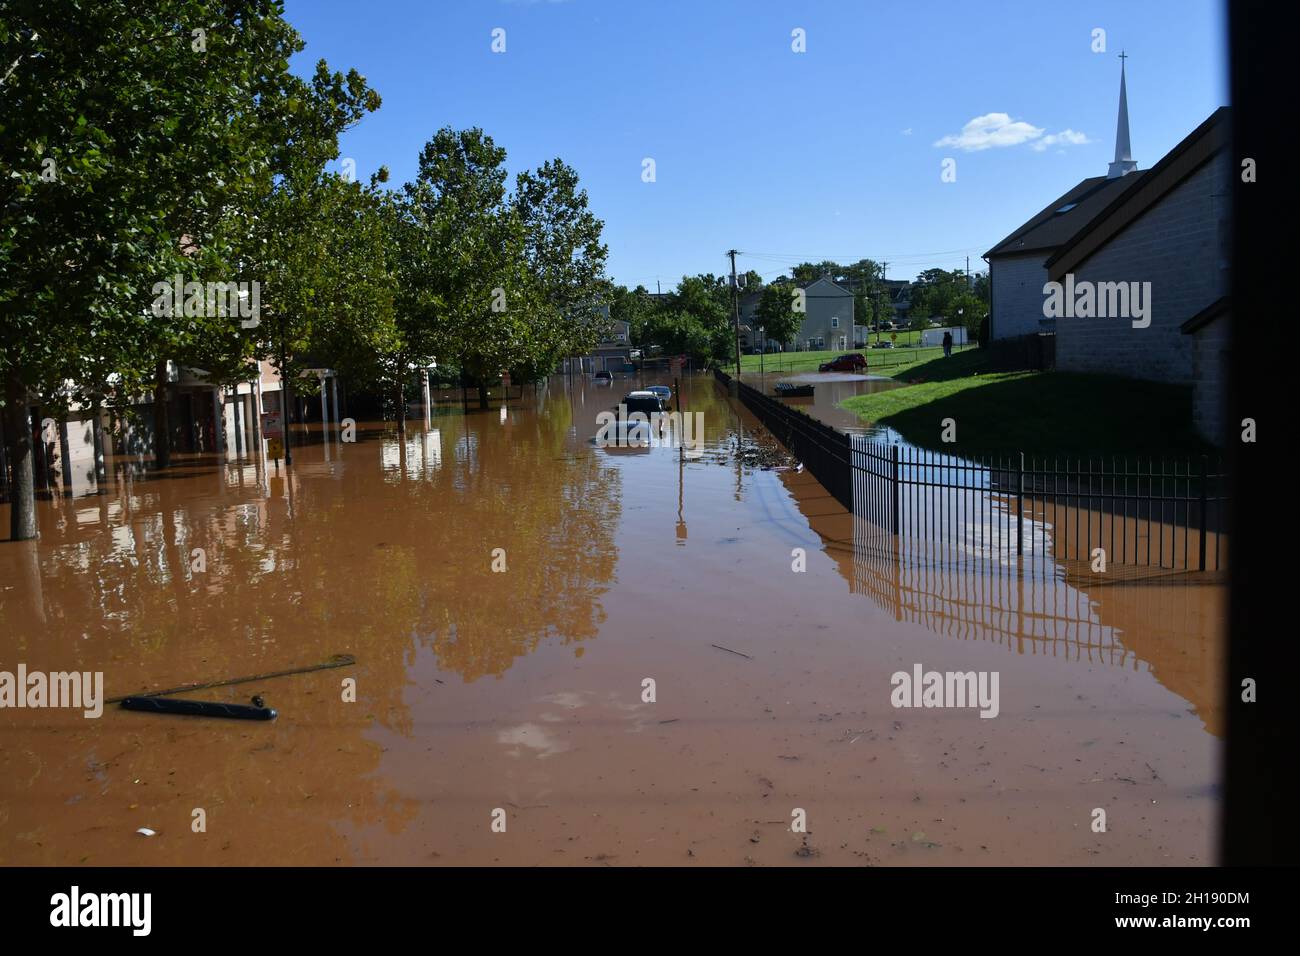 Inondations causées par l'ouragan Ida au Nouveau-Brunswick, NJ Banque D'Images